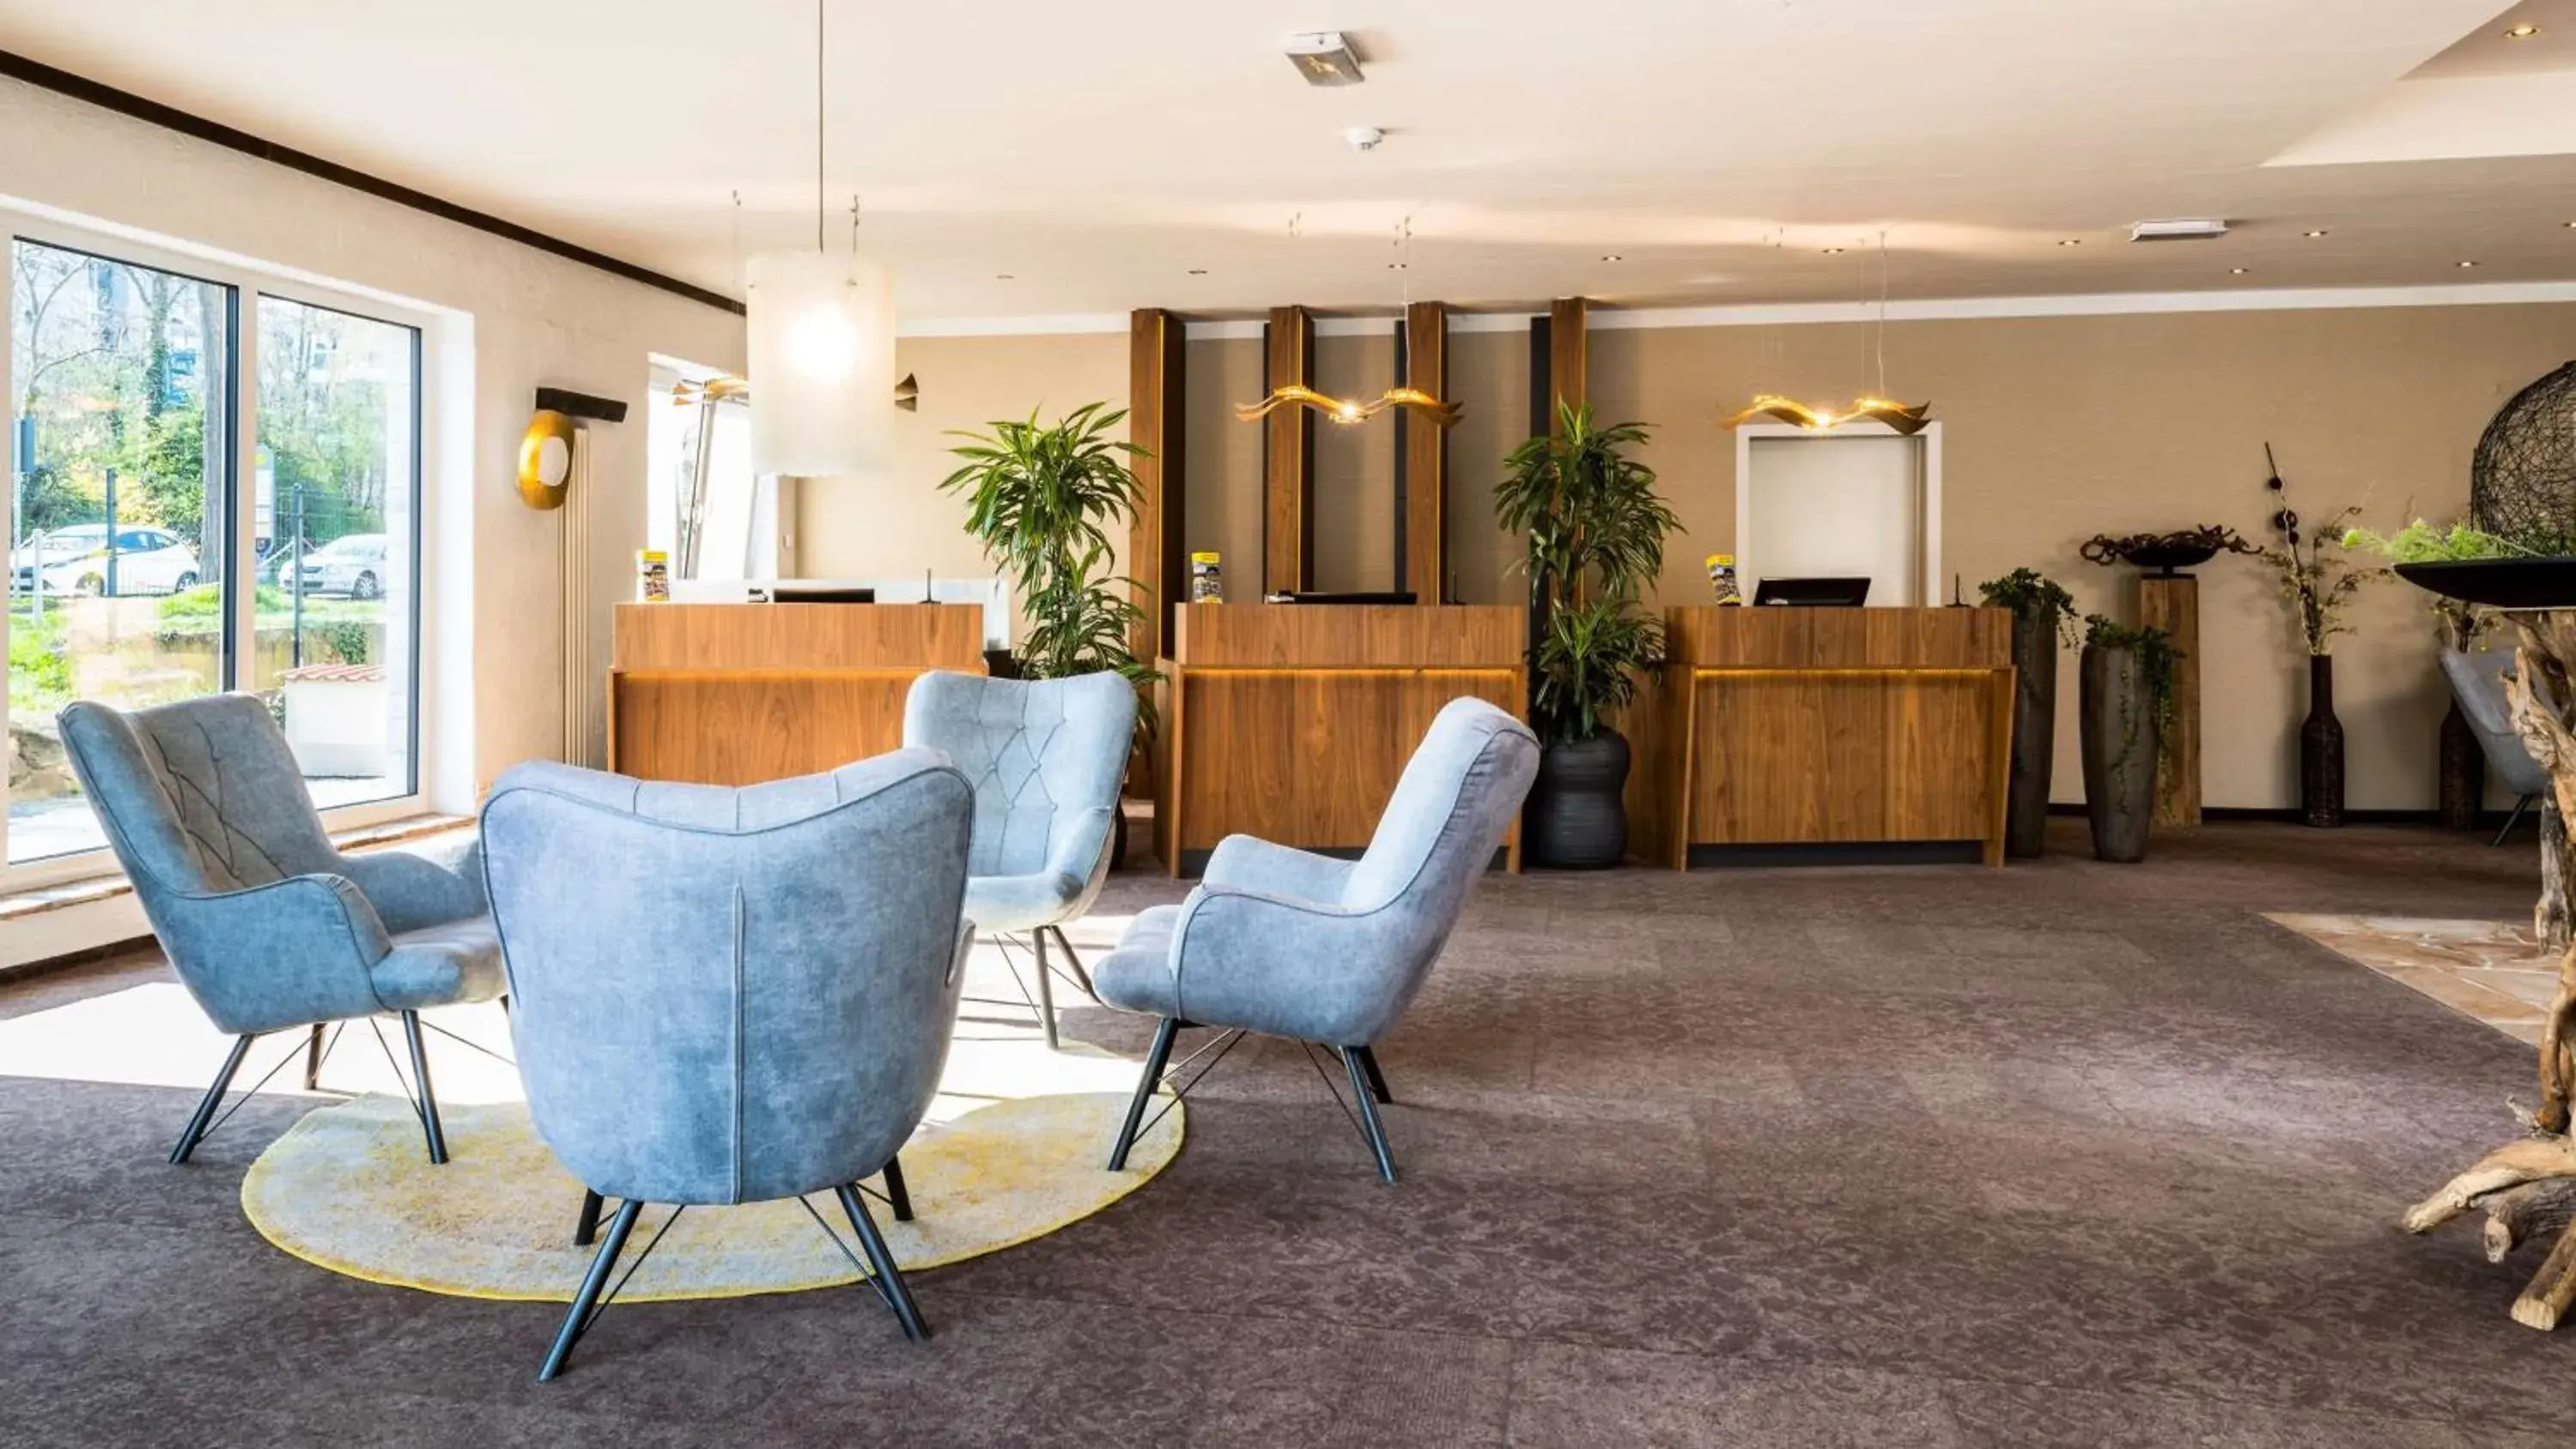 Lobby or reception, Lobby/Reception in Best Western Hotel Mainz